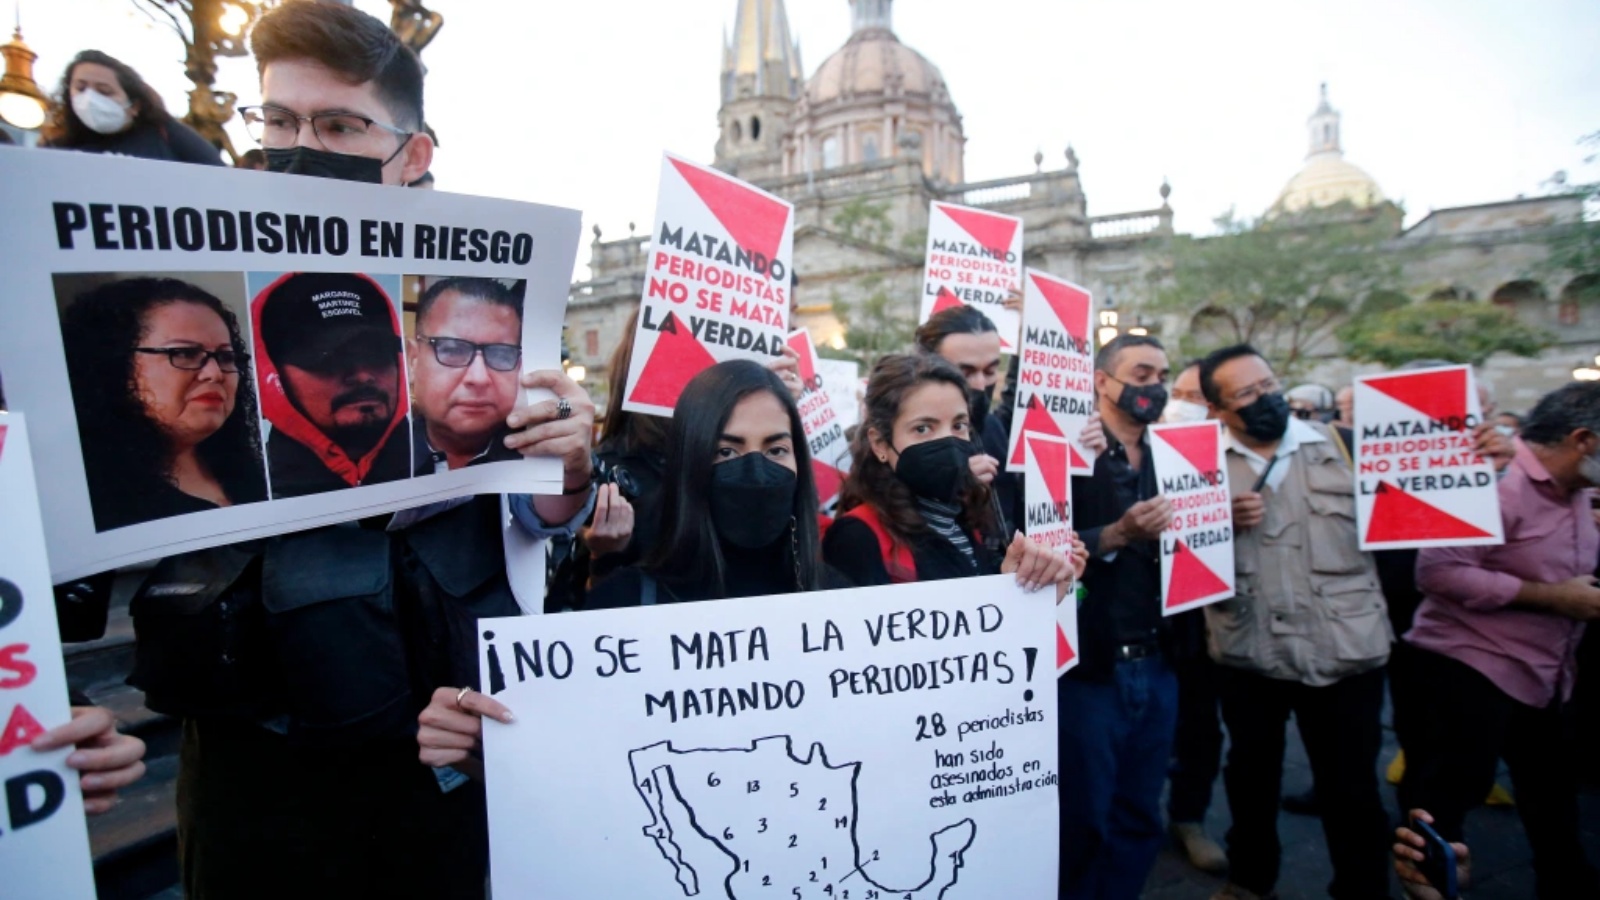 صحفيون في غوادالاخارا ، المكسيك ، يحملون صورًا لورد مالدونادو ، ومارجريتو مارتينيز وخوسيه لويس جامبوا خلال احتجاجات عمت البلاد ضد مقتل الصحفيين الثلاثة.